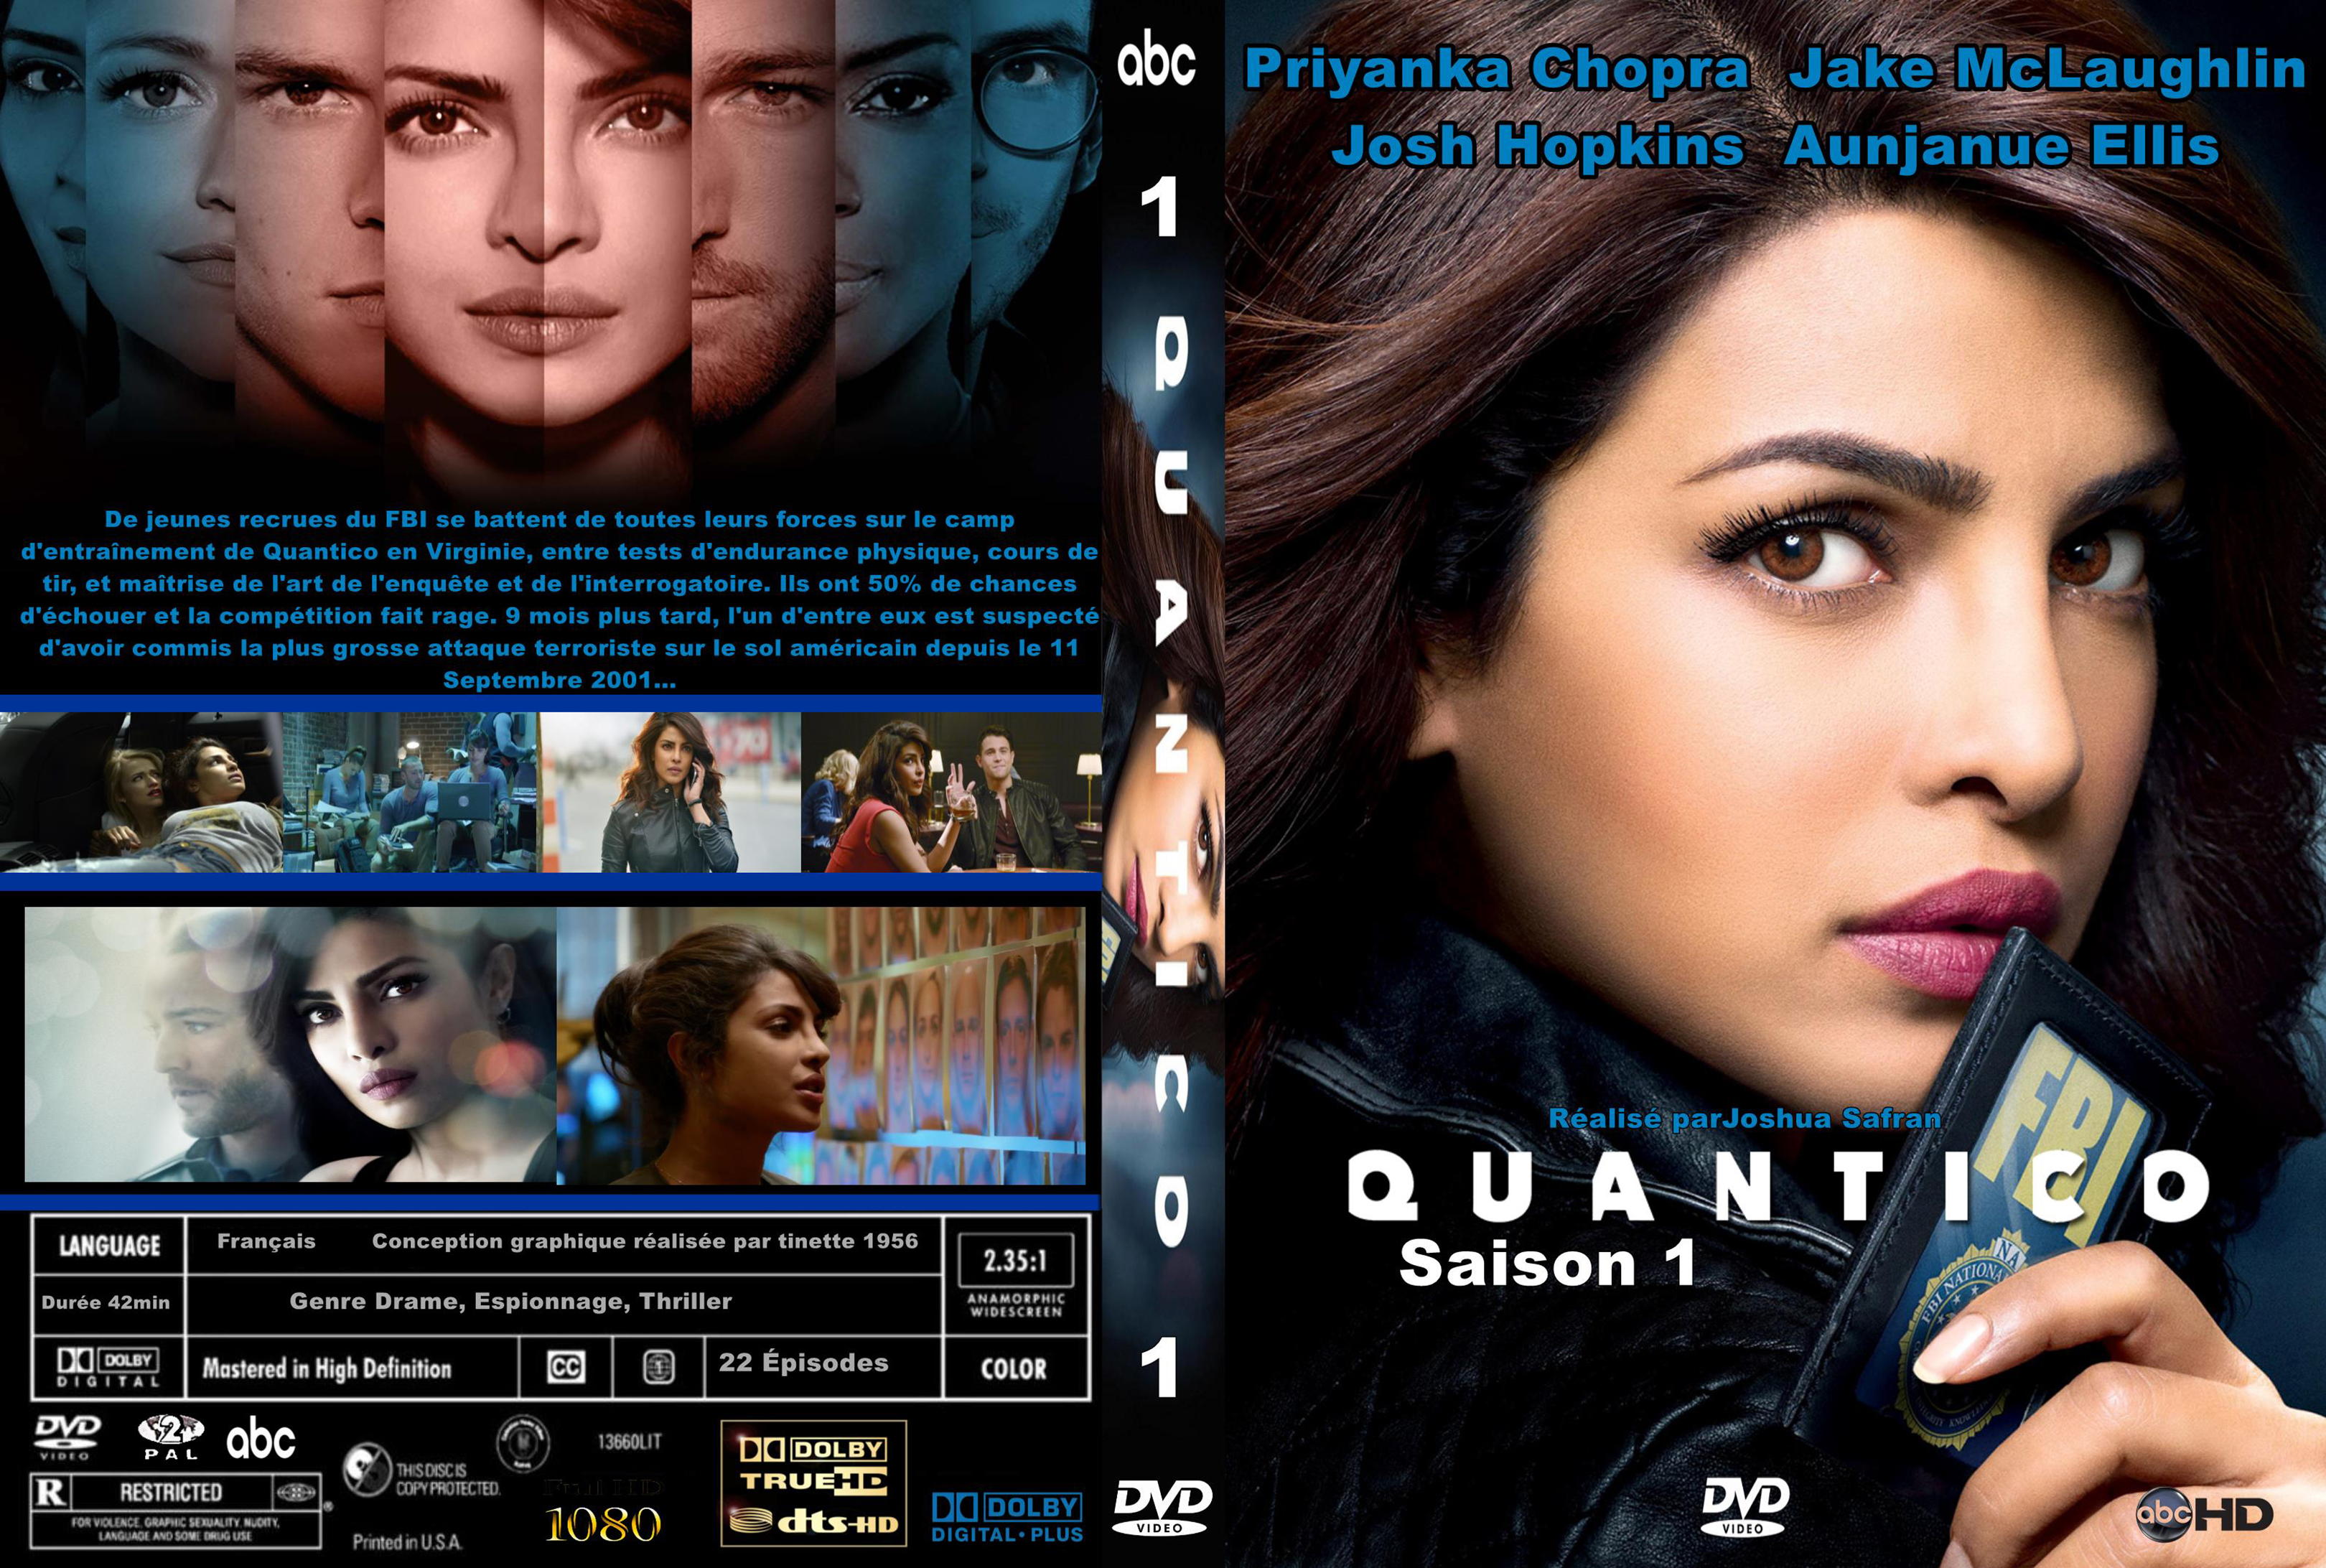 Jaquette Dvd De Quantico Saison 1 Custom Cinéma Passion